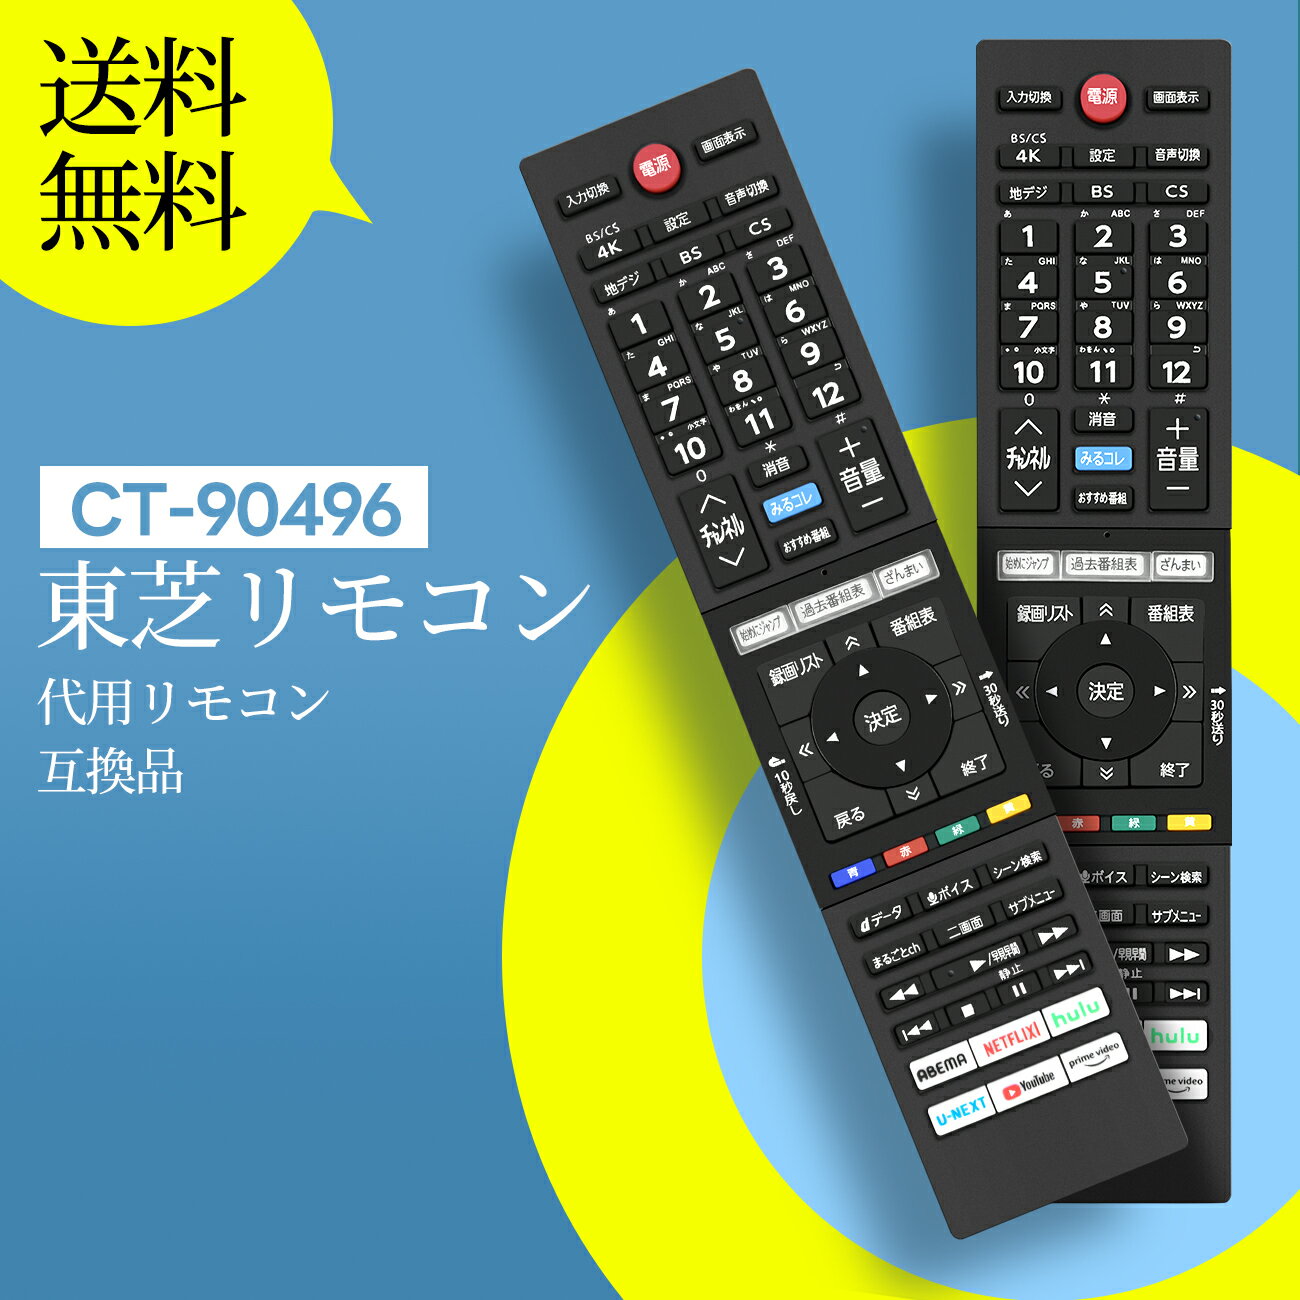 テレビリモコン CT-90496 for 東芝 TOSHIBA 液晶テレビ用リモコン 設定不要 触れ心地よし 鋭敏な反応 48X9400S 55X9400S 65X9400S 50Z740XS 55Z740XS 65Z740XS 対応 （音声機能なし）